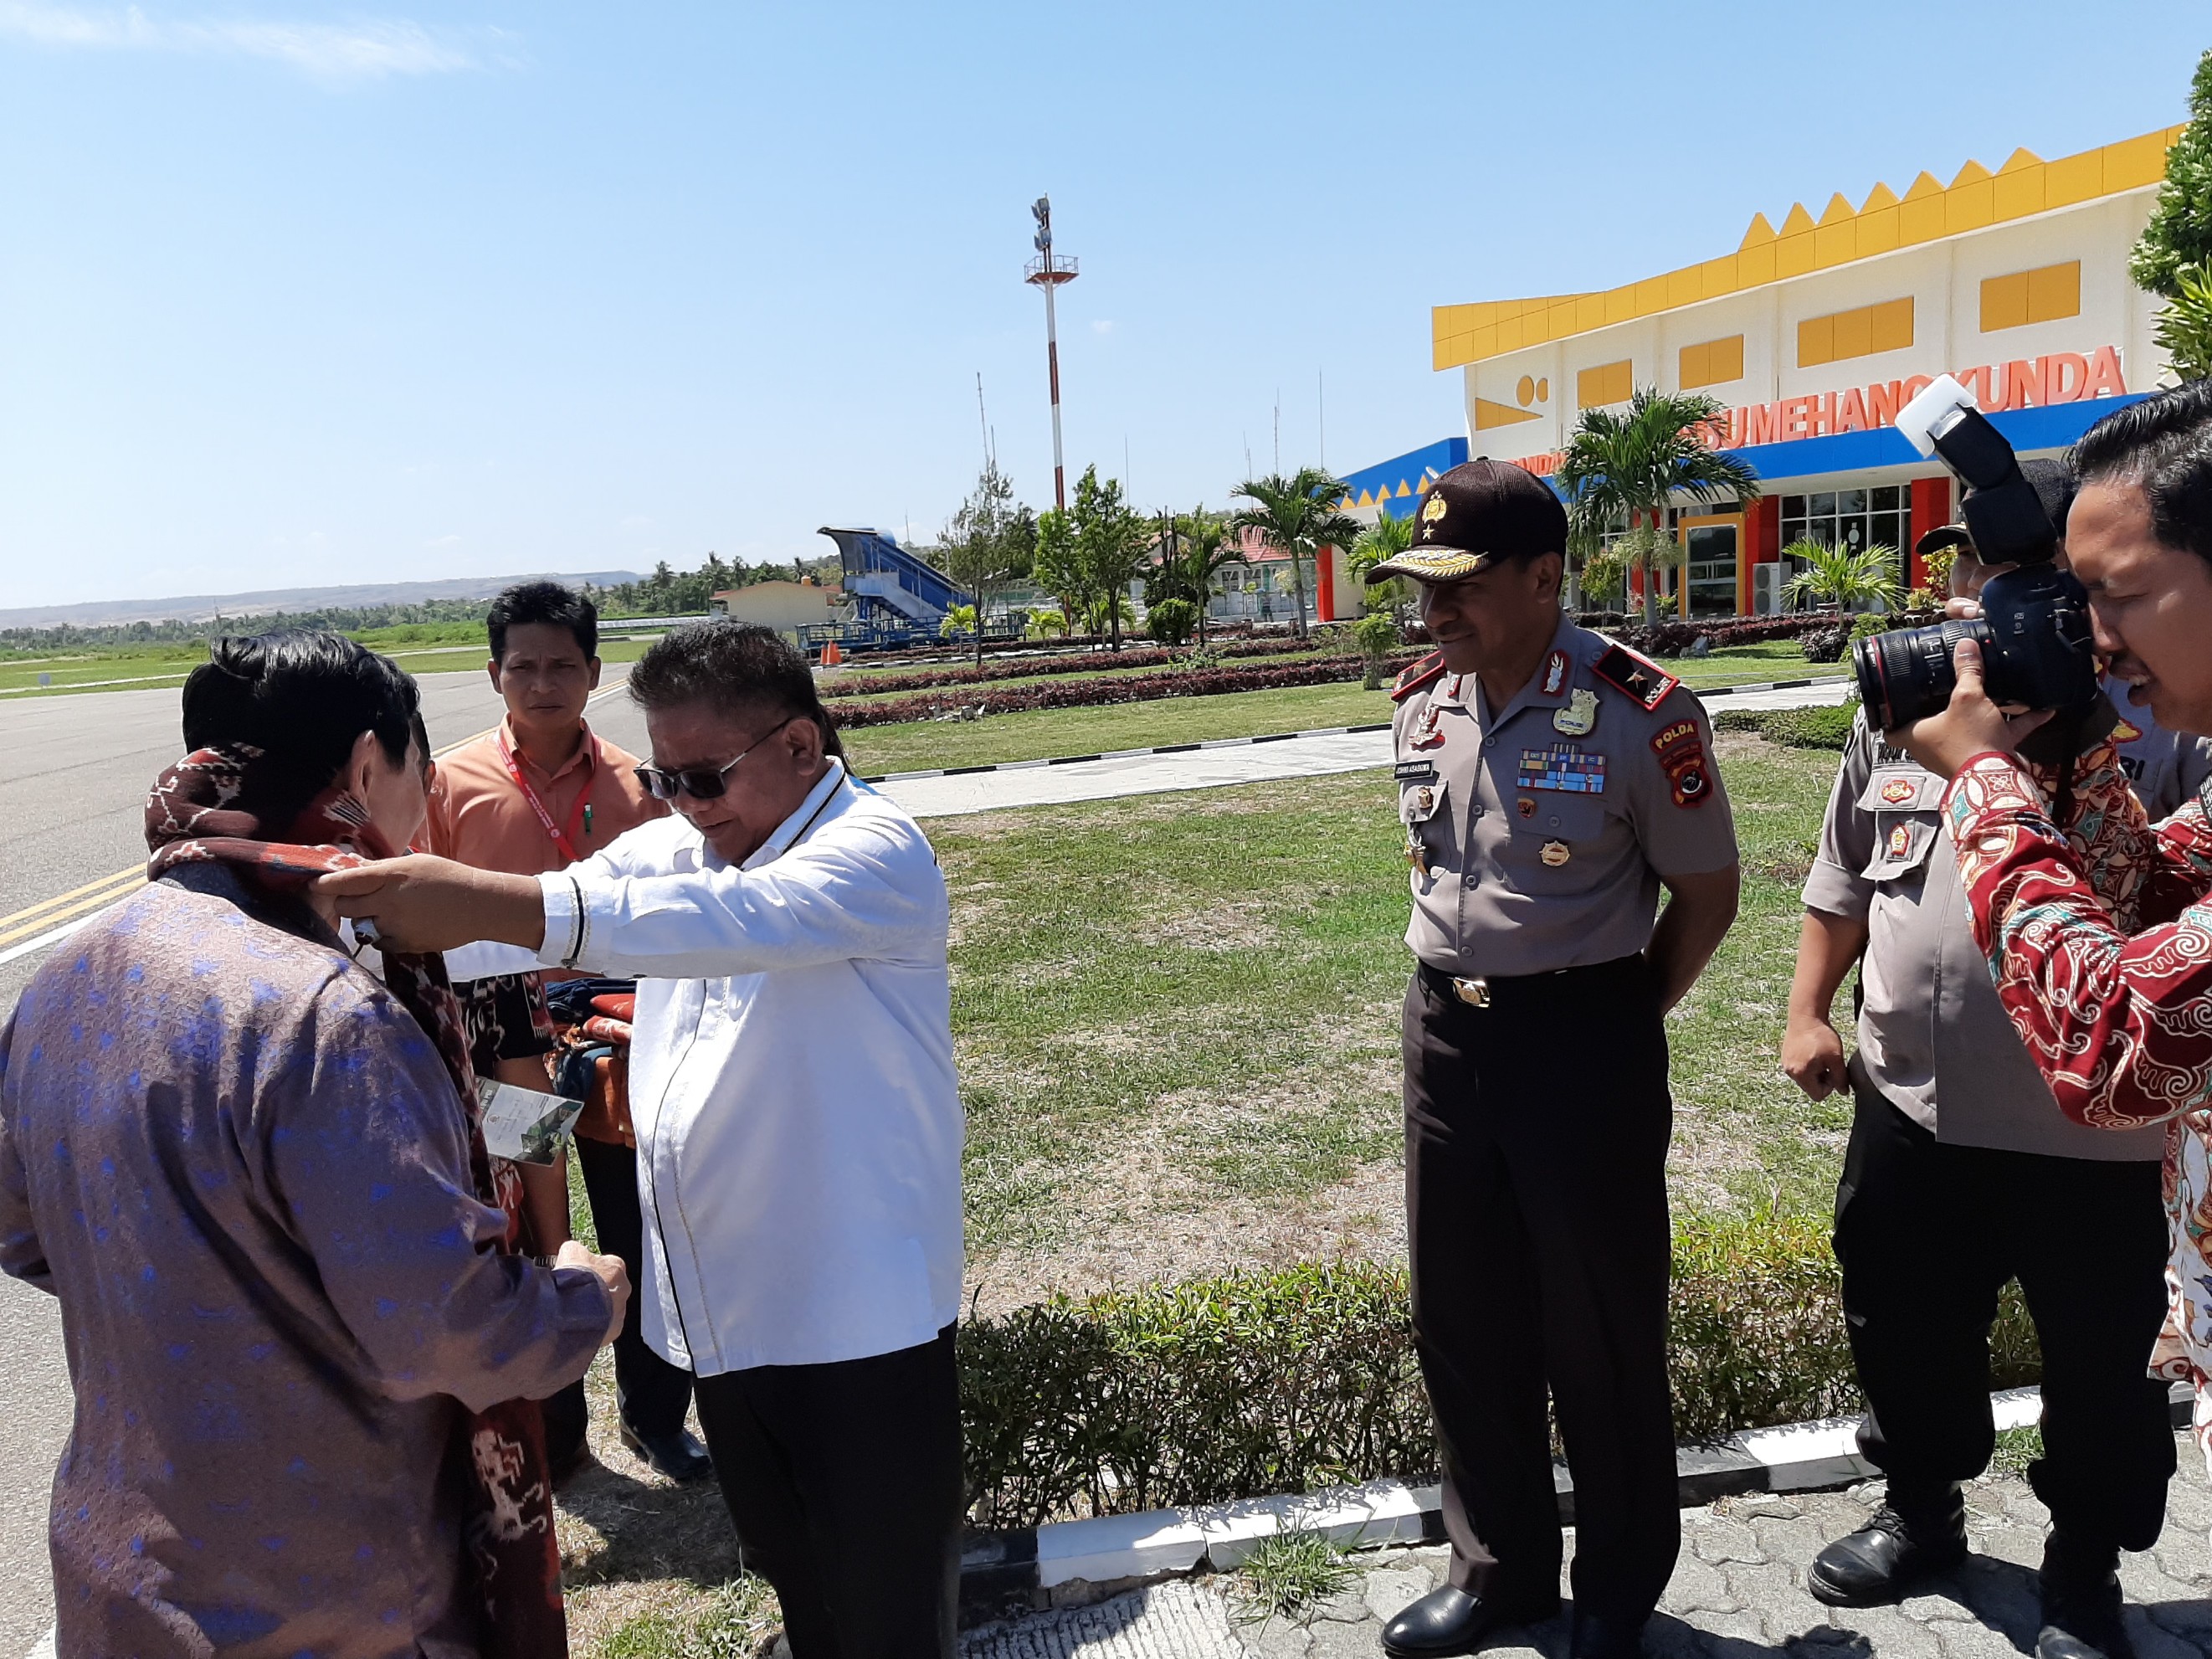 Wakapolda NTT Turut Serta Sambut Kedatangan Menteri Luhut di Sumba Timur